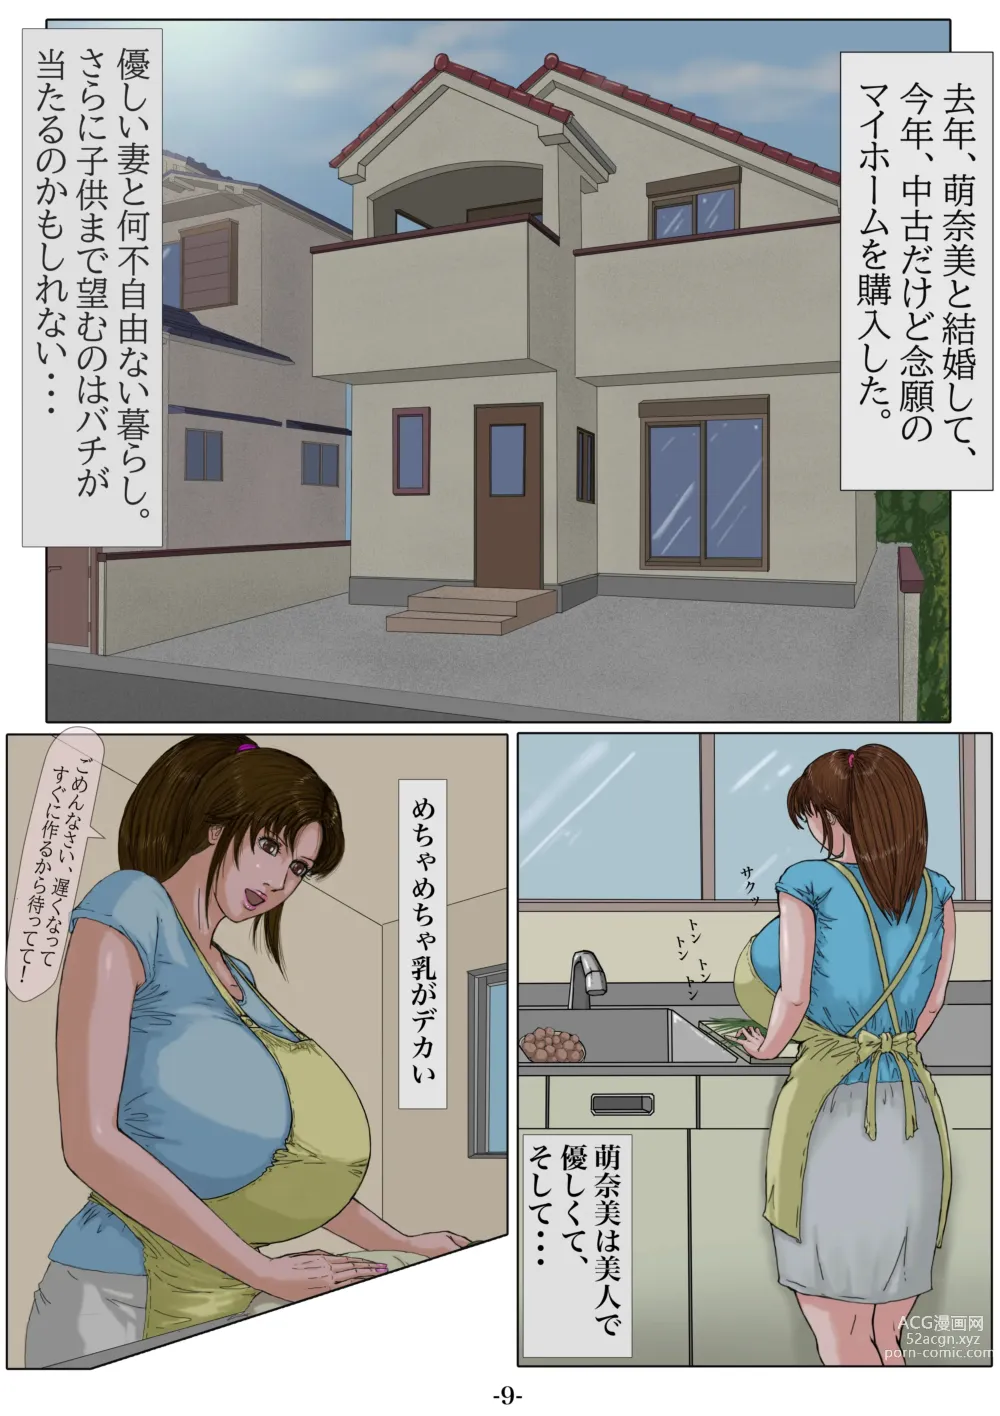 Page 10 of doujinshi Ninshinshitai mesu Haramasettai osu